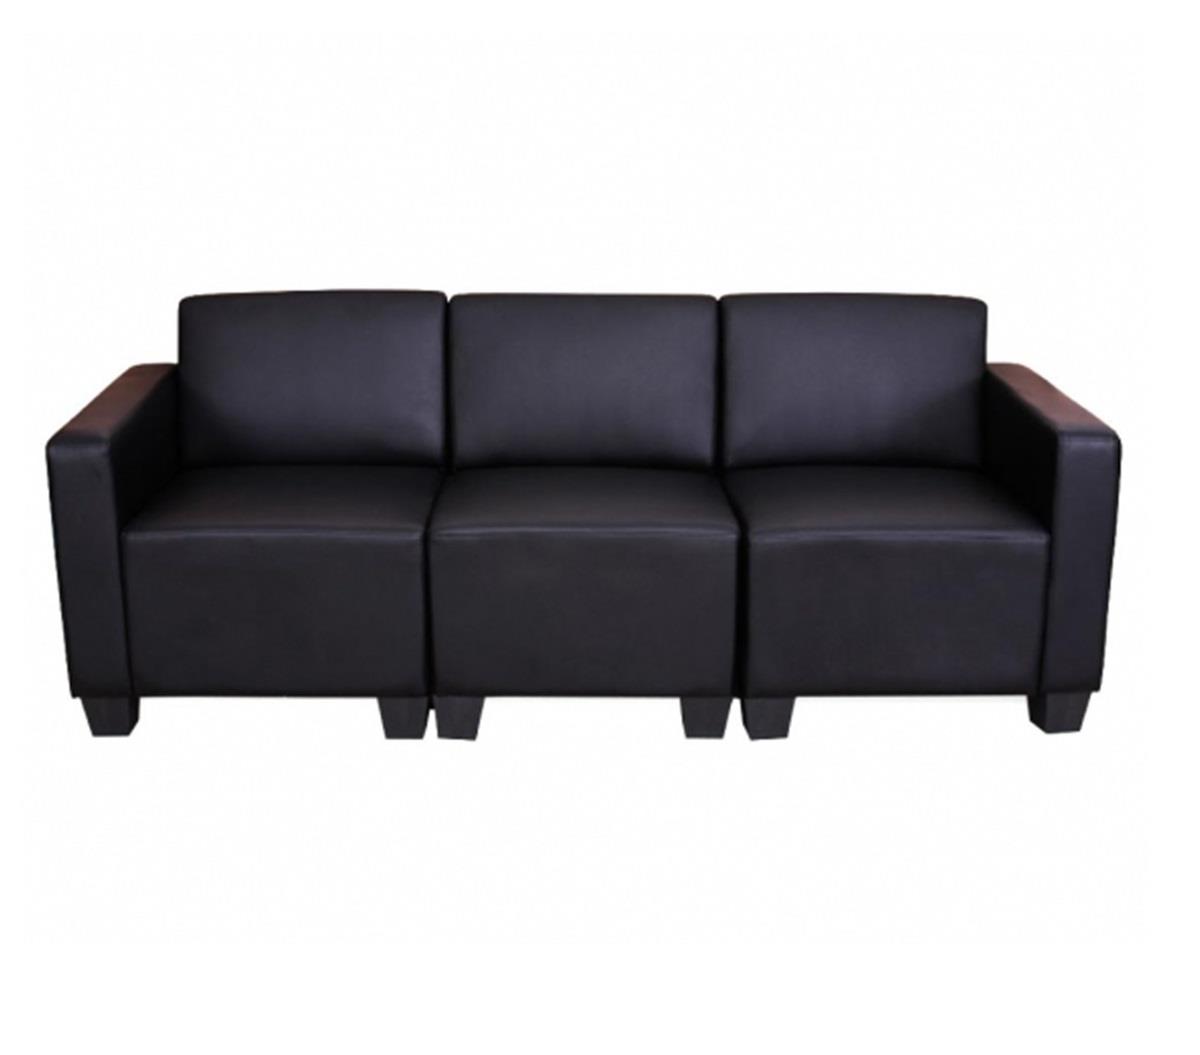 Sofá Modular de 3 plazas LONY, Gran Acolchado, Exclusivo Diseño, en Piel color Negro